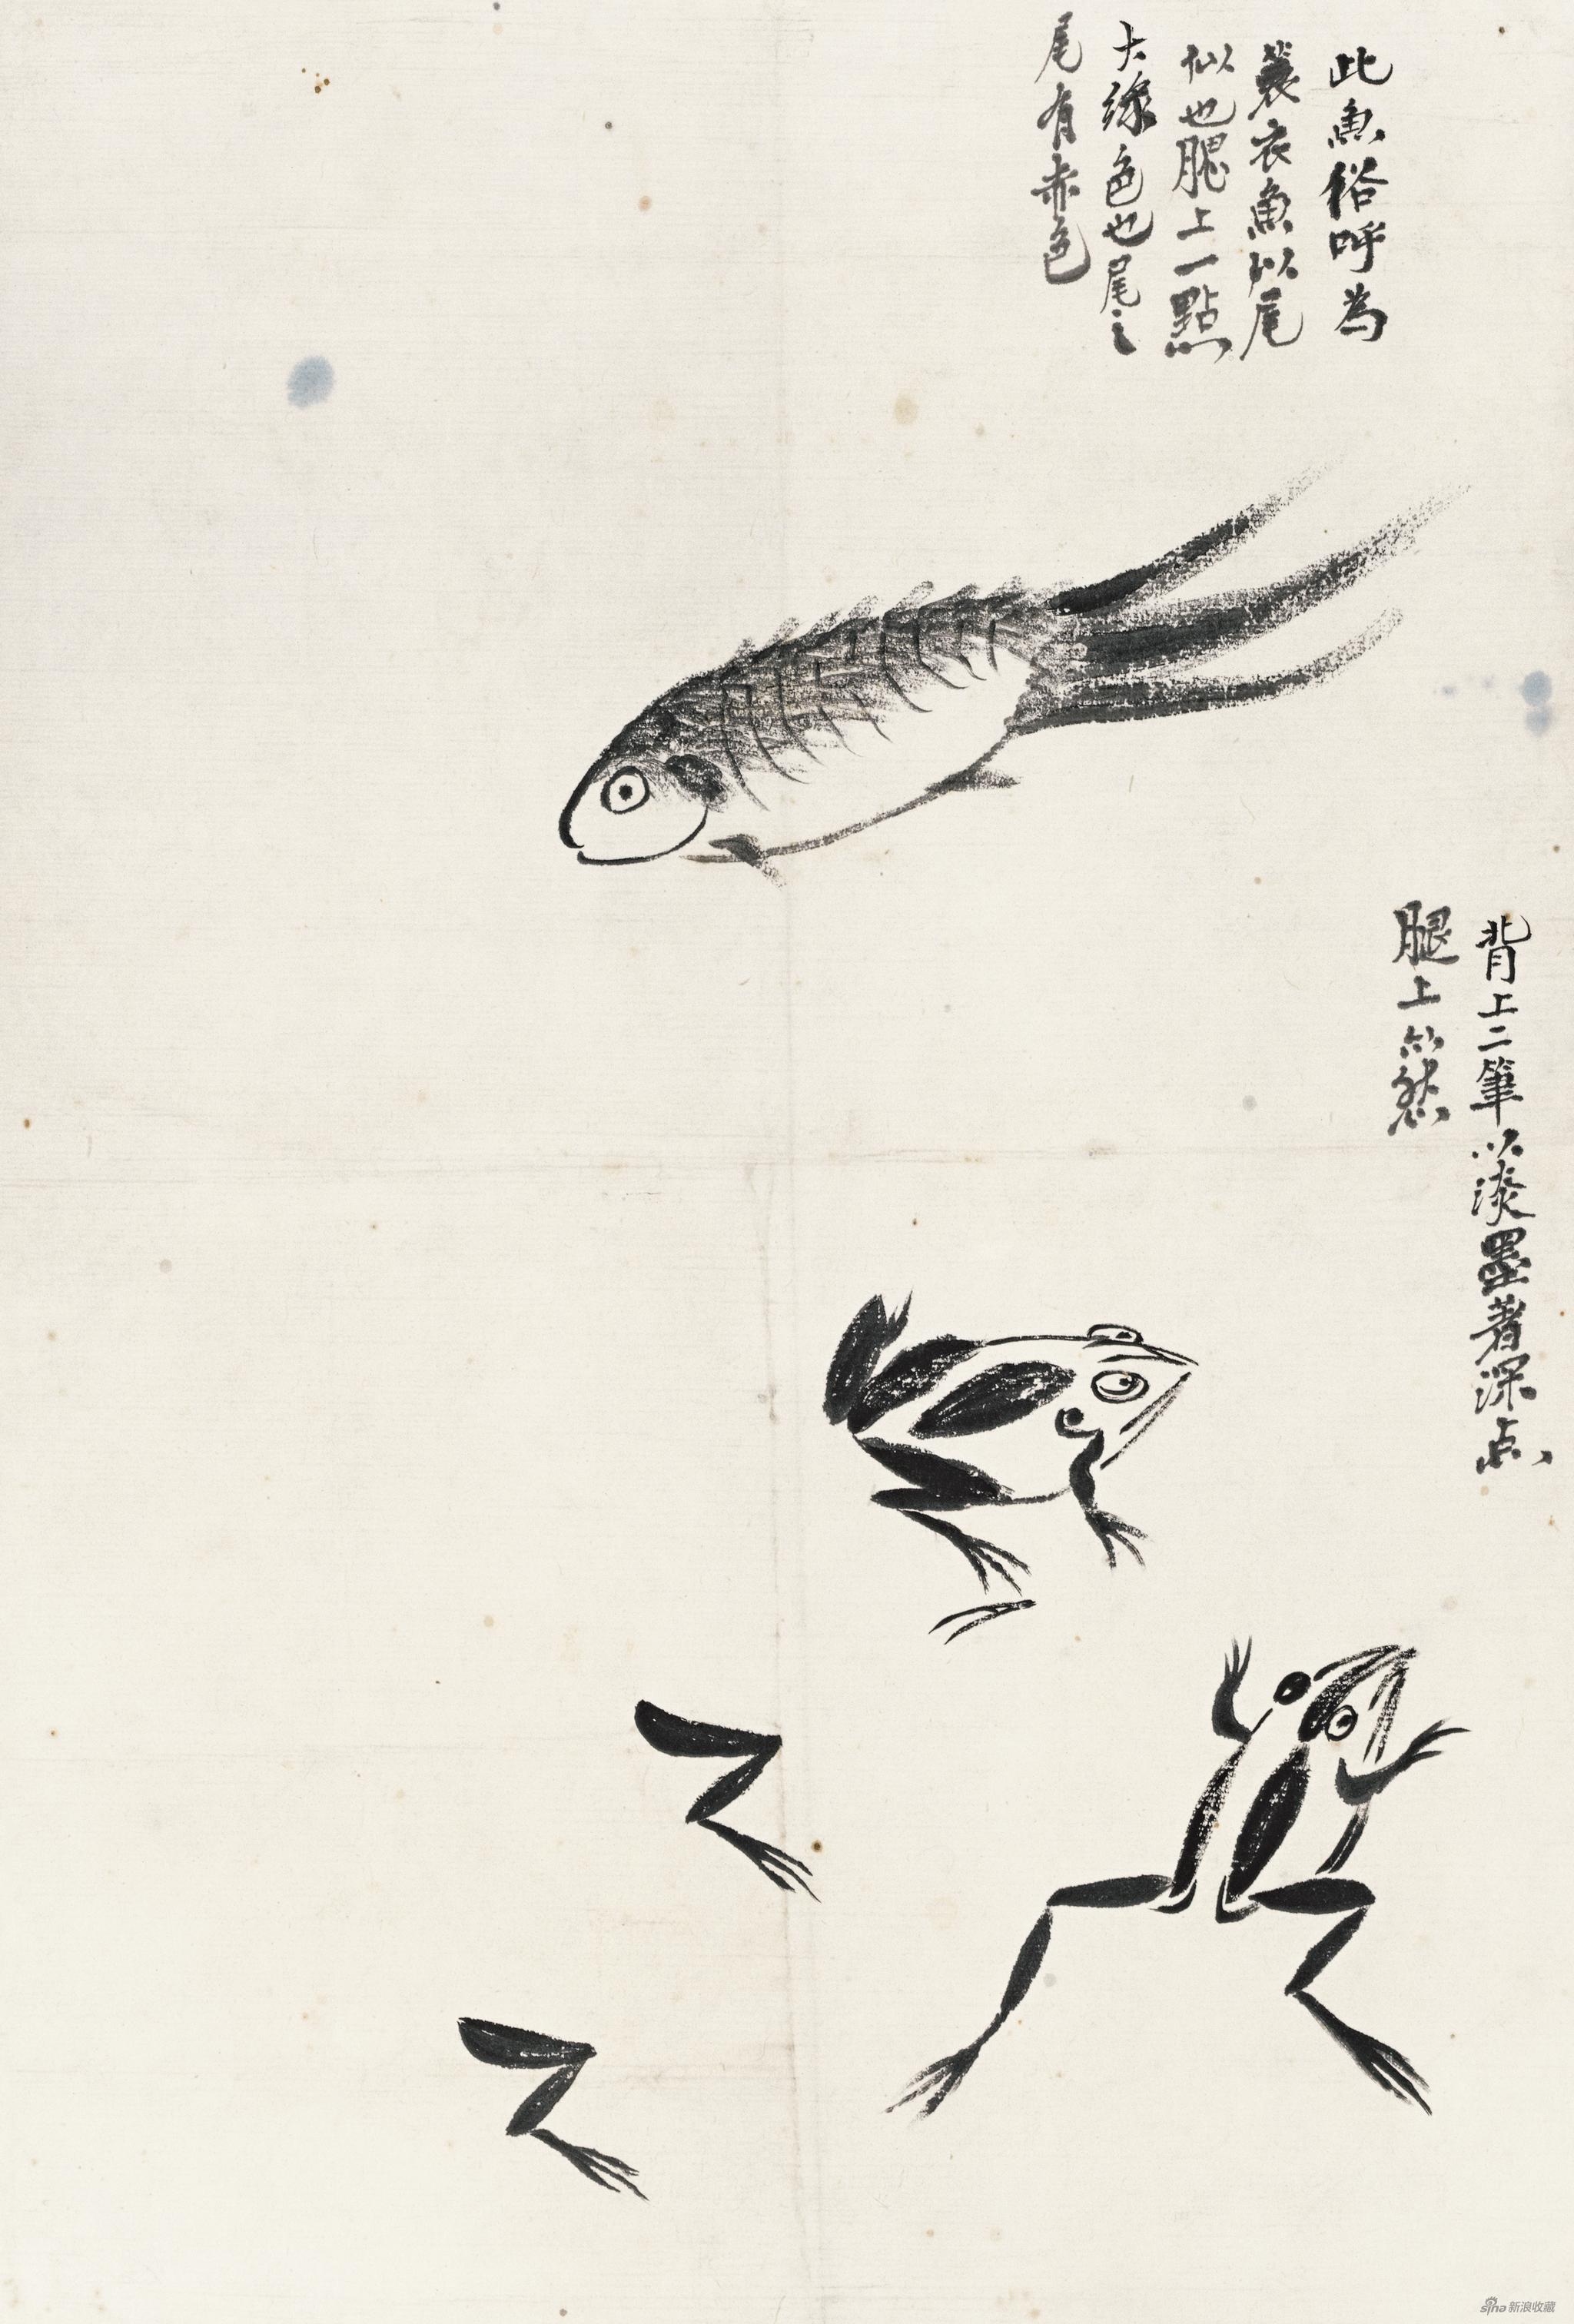 一鱼二蛙 齐白石 35cm×23.5cm 无年款 纸本水墨 北京画院藏